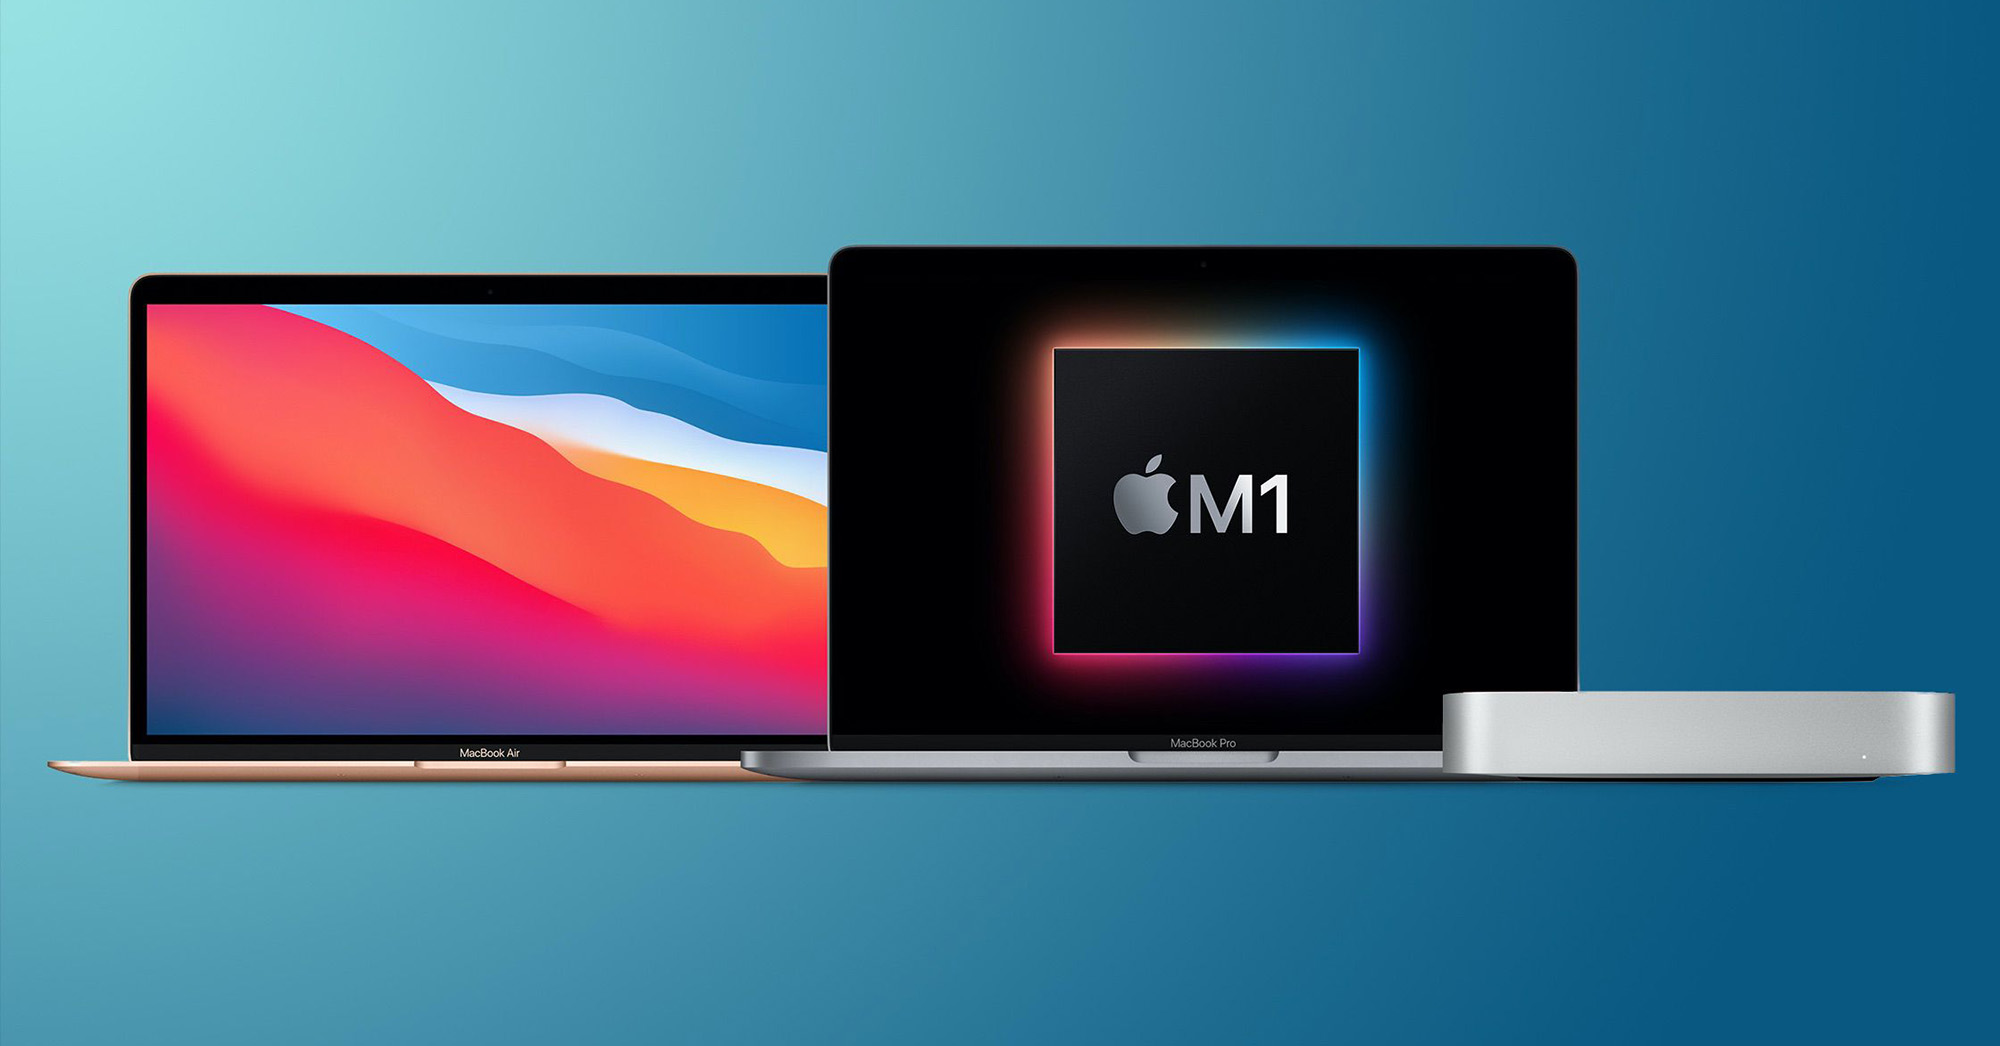 Hướng dẫn cách kiểm tra những ứng dụng đã được tối ưu cho máy Mac M1